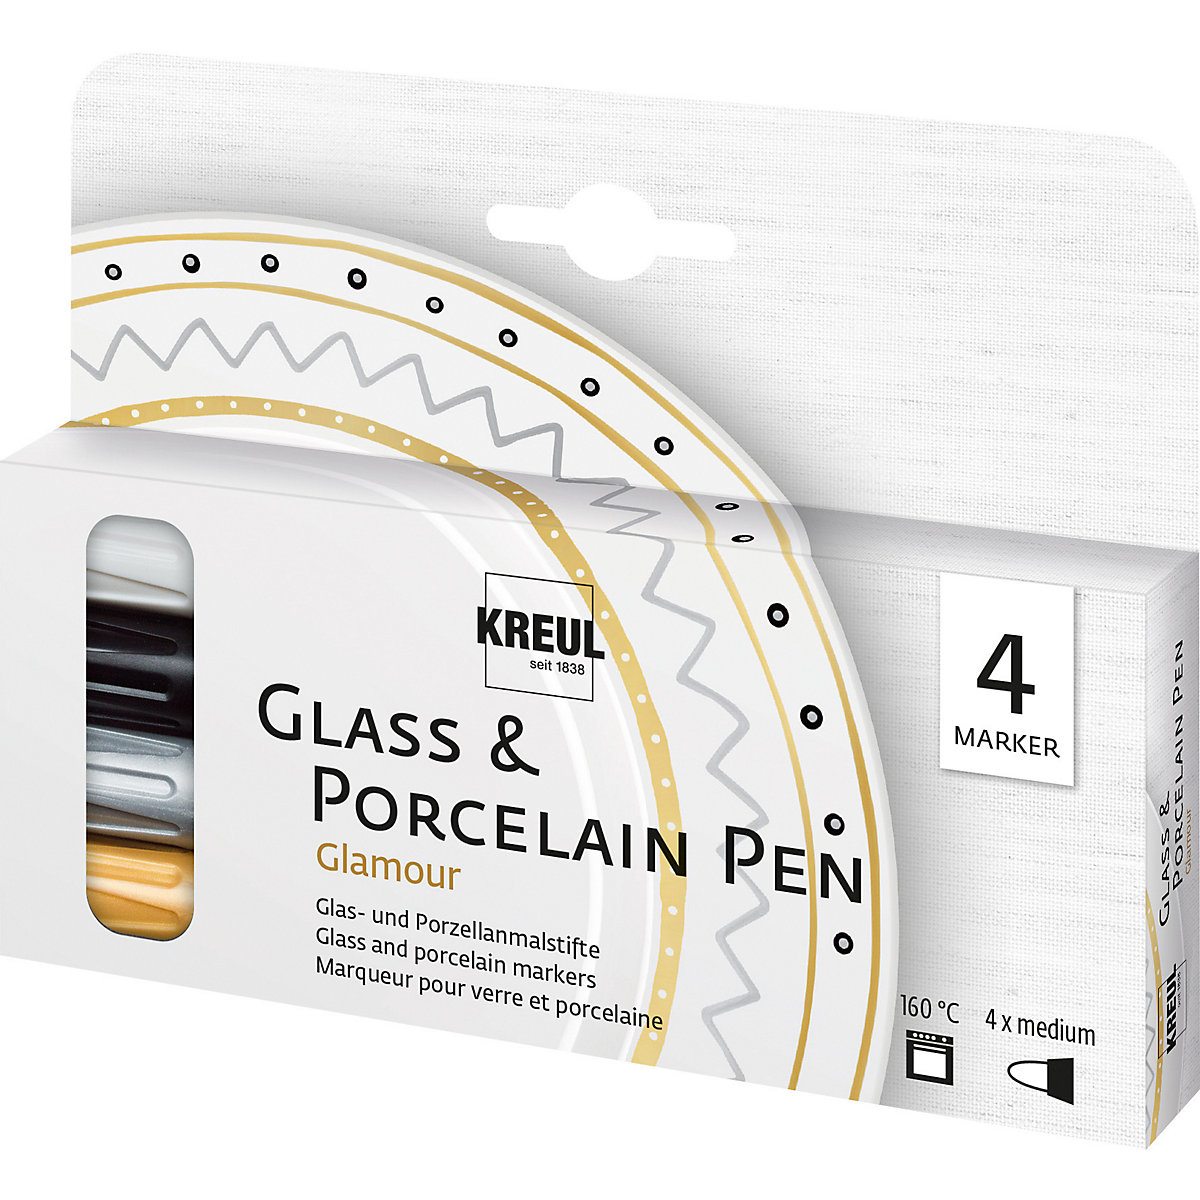 KREUL Glass & Porcelain Pen 4er Set Glamour